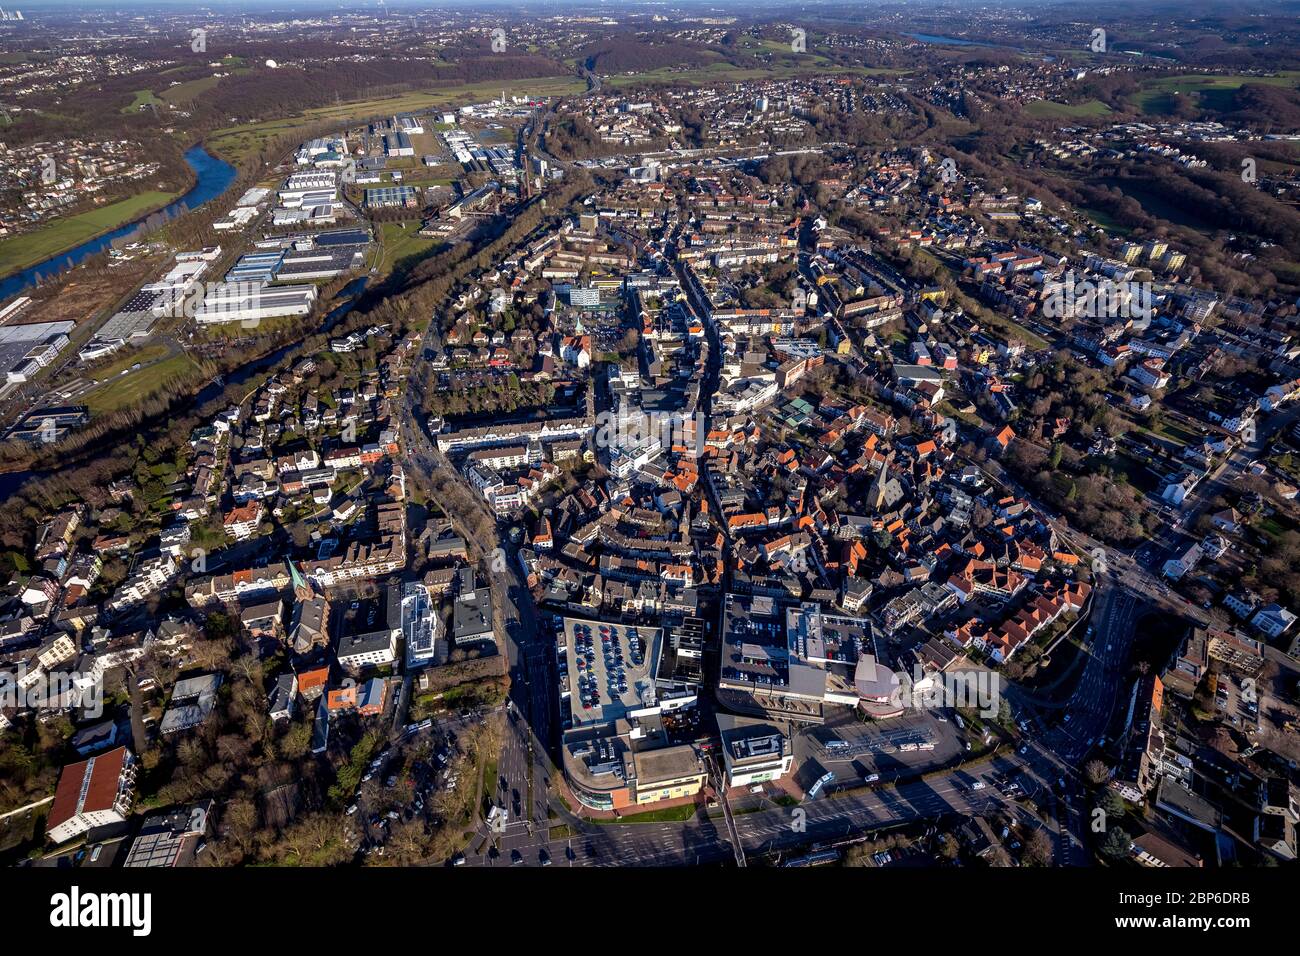 Vue aérienne, vue sur la ville et centre ville de Hattingen, rivière Ruhr, Hattingen, quartier Ennepe-Ruhr, région de la Ruhr, Rhénanie-du-Nord-Westphalie, Allemagne Banque D'Images